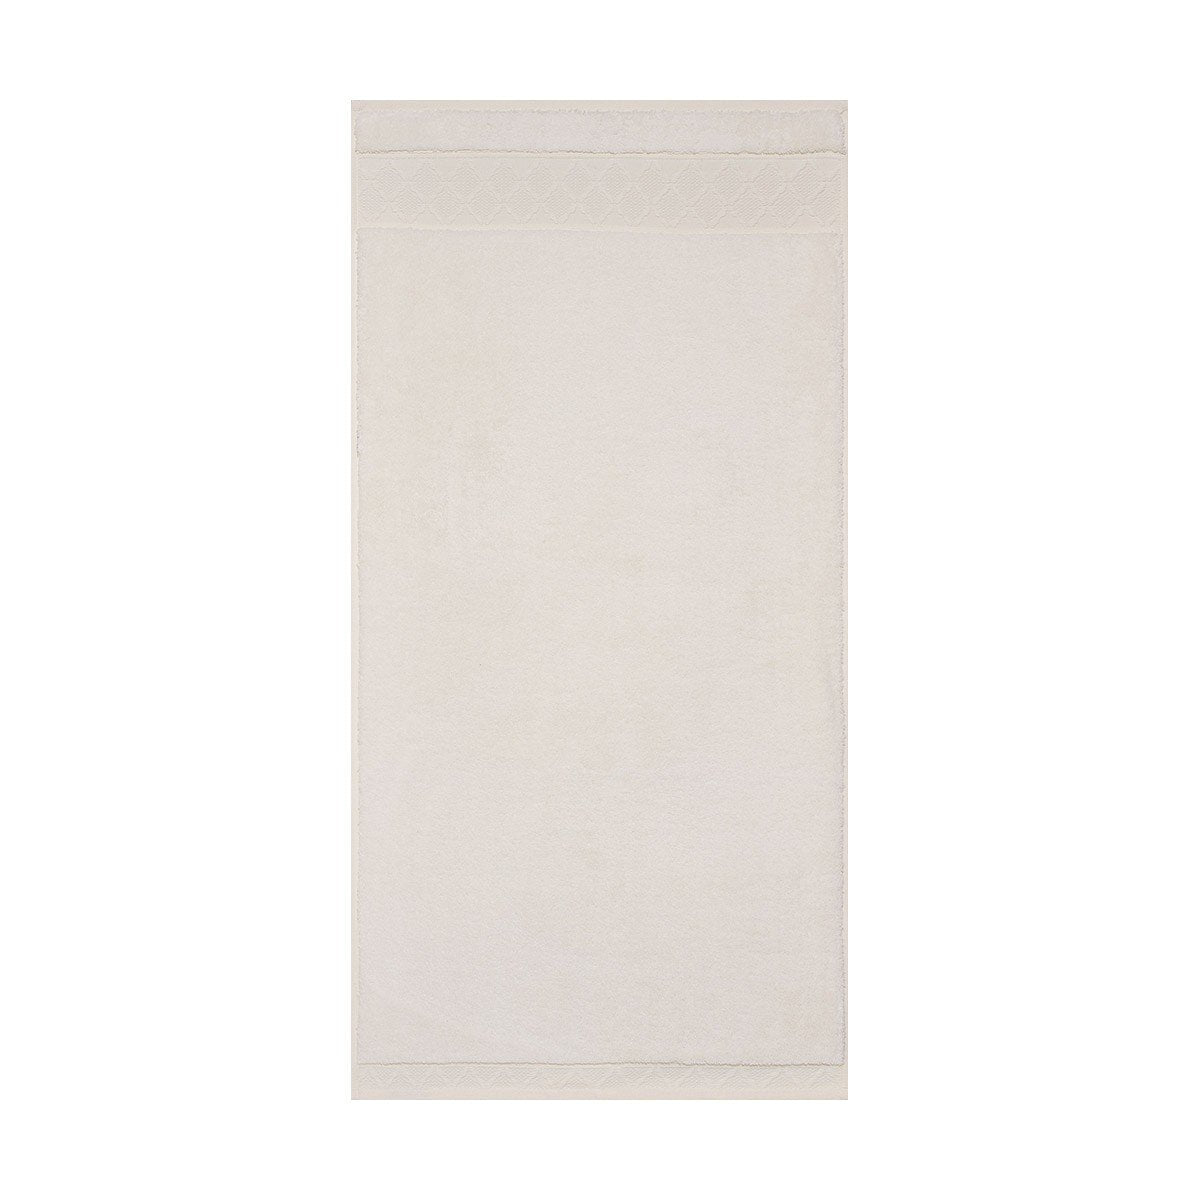 Le Jacquard Français | Caresse Ivory Bath Collection | Fig Linens - Bath towel, guest towel